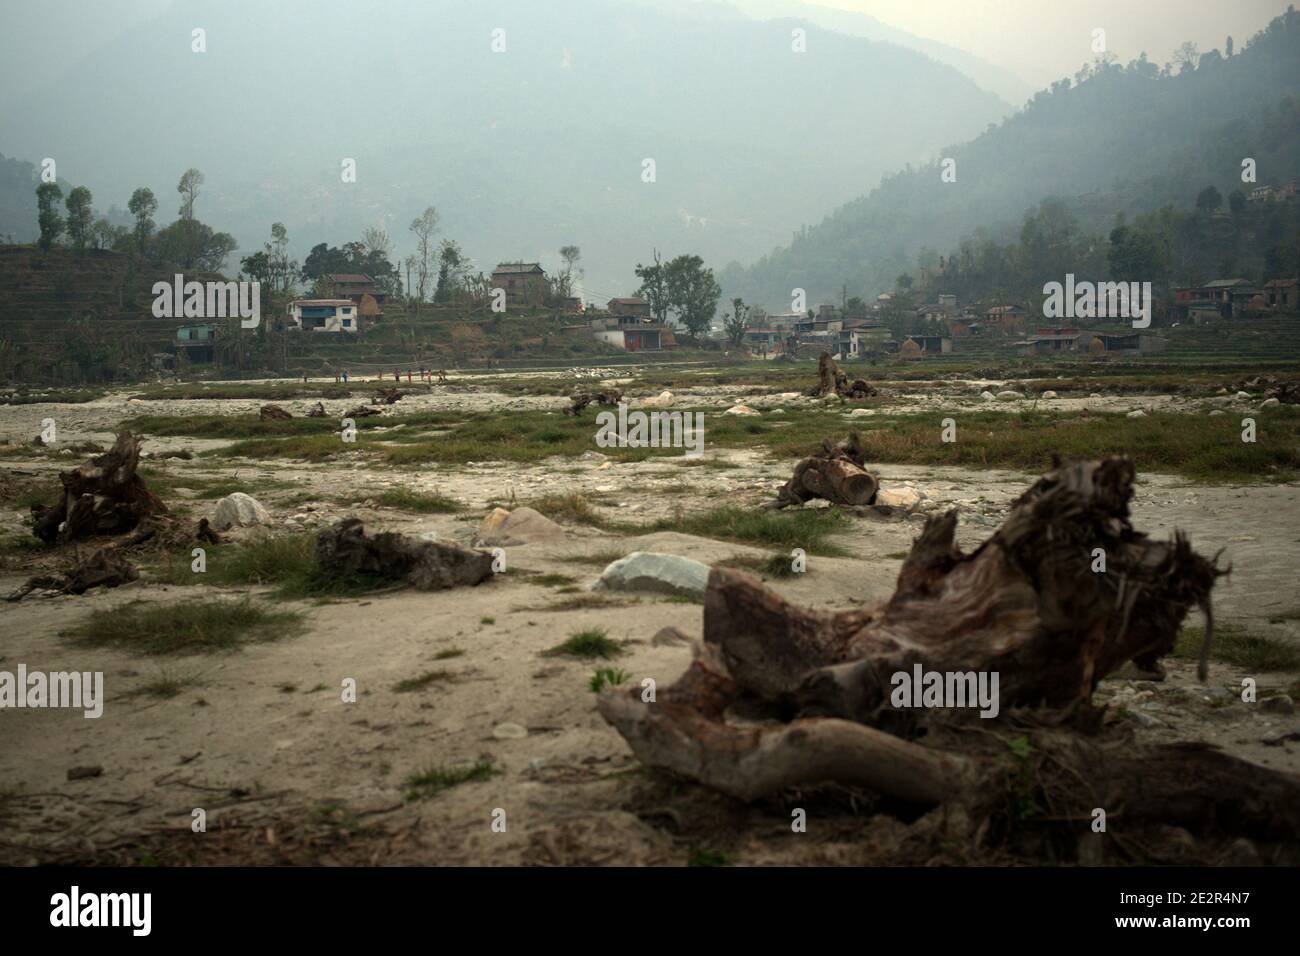 Flacher Boden unter steilem Gelände, das während der Regenzeit als Wasserstraße dienen würde. Harpan Khola, Kaski, Gandaki, Nepal. Stockfoto